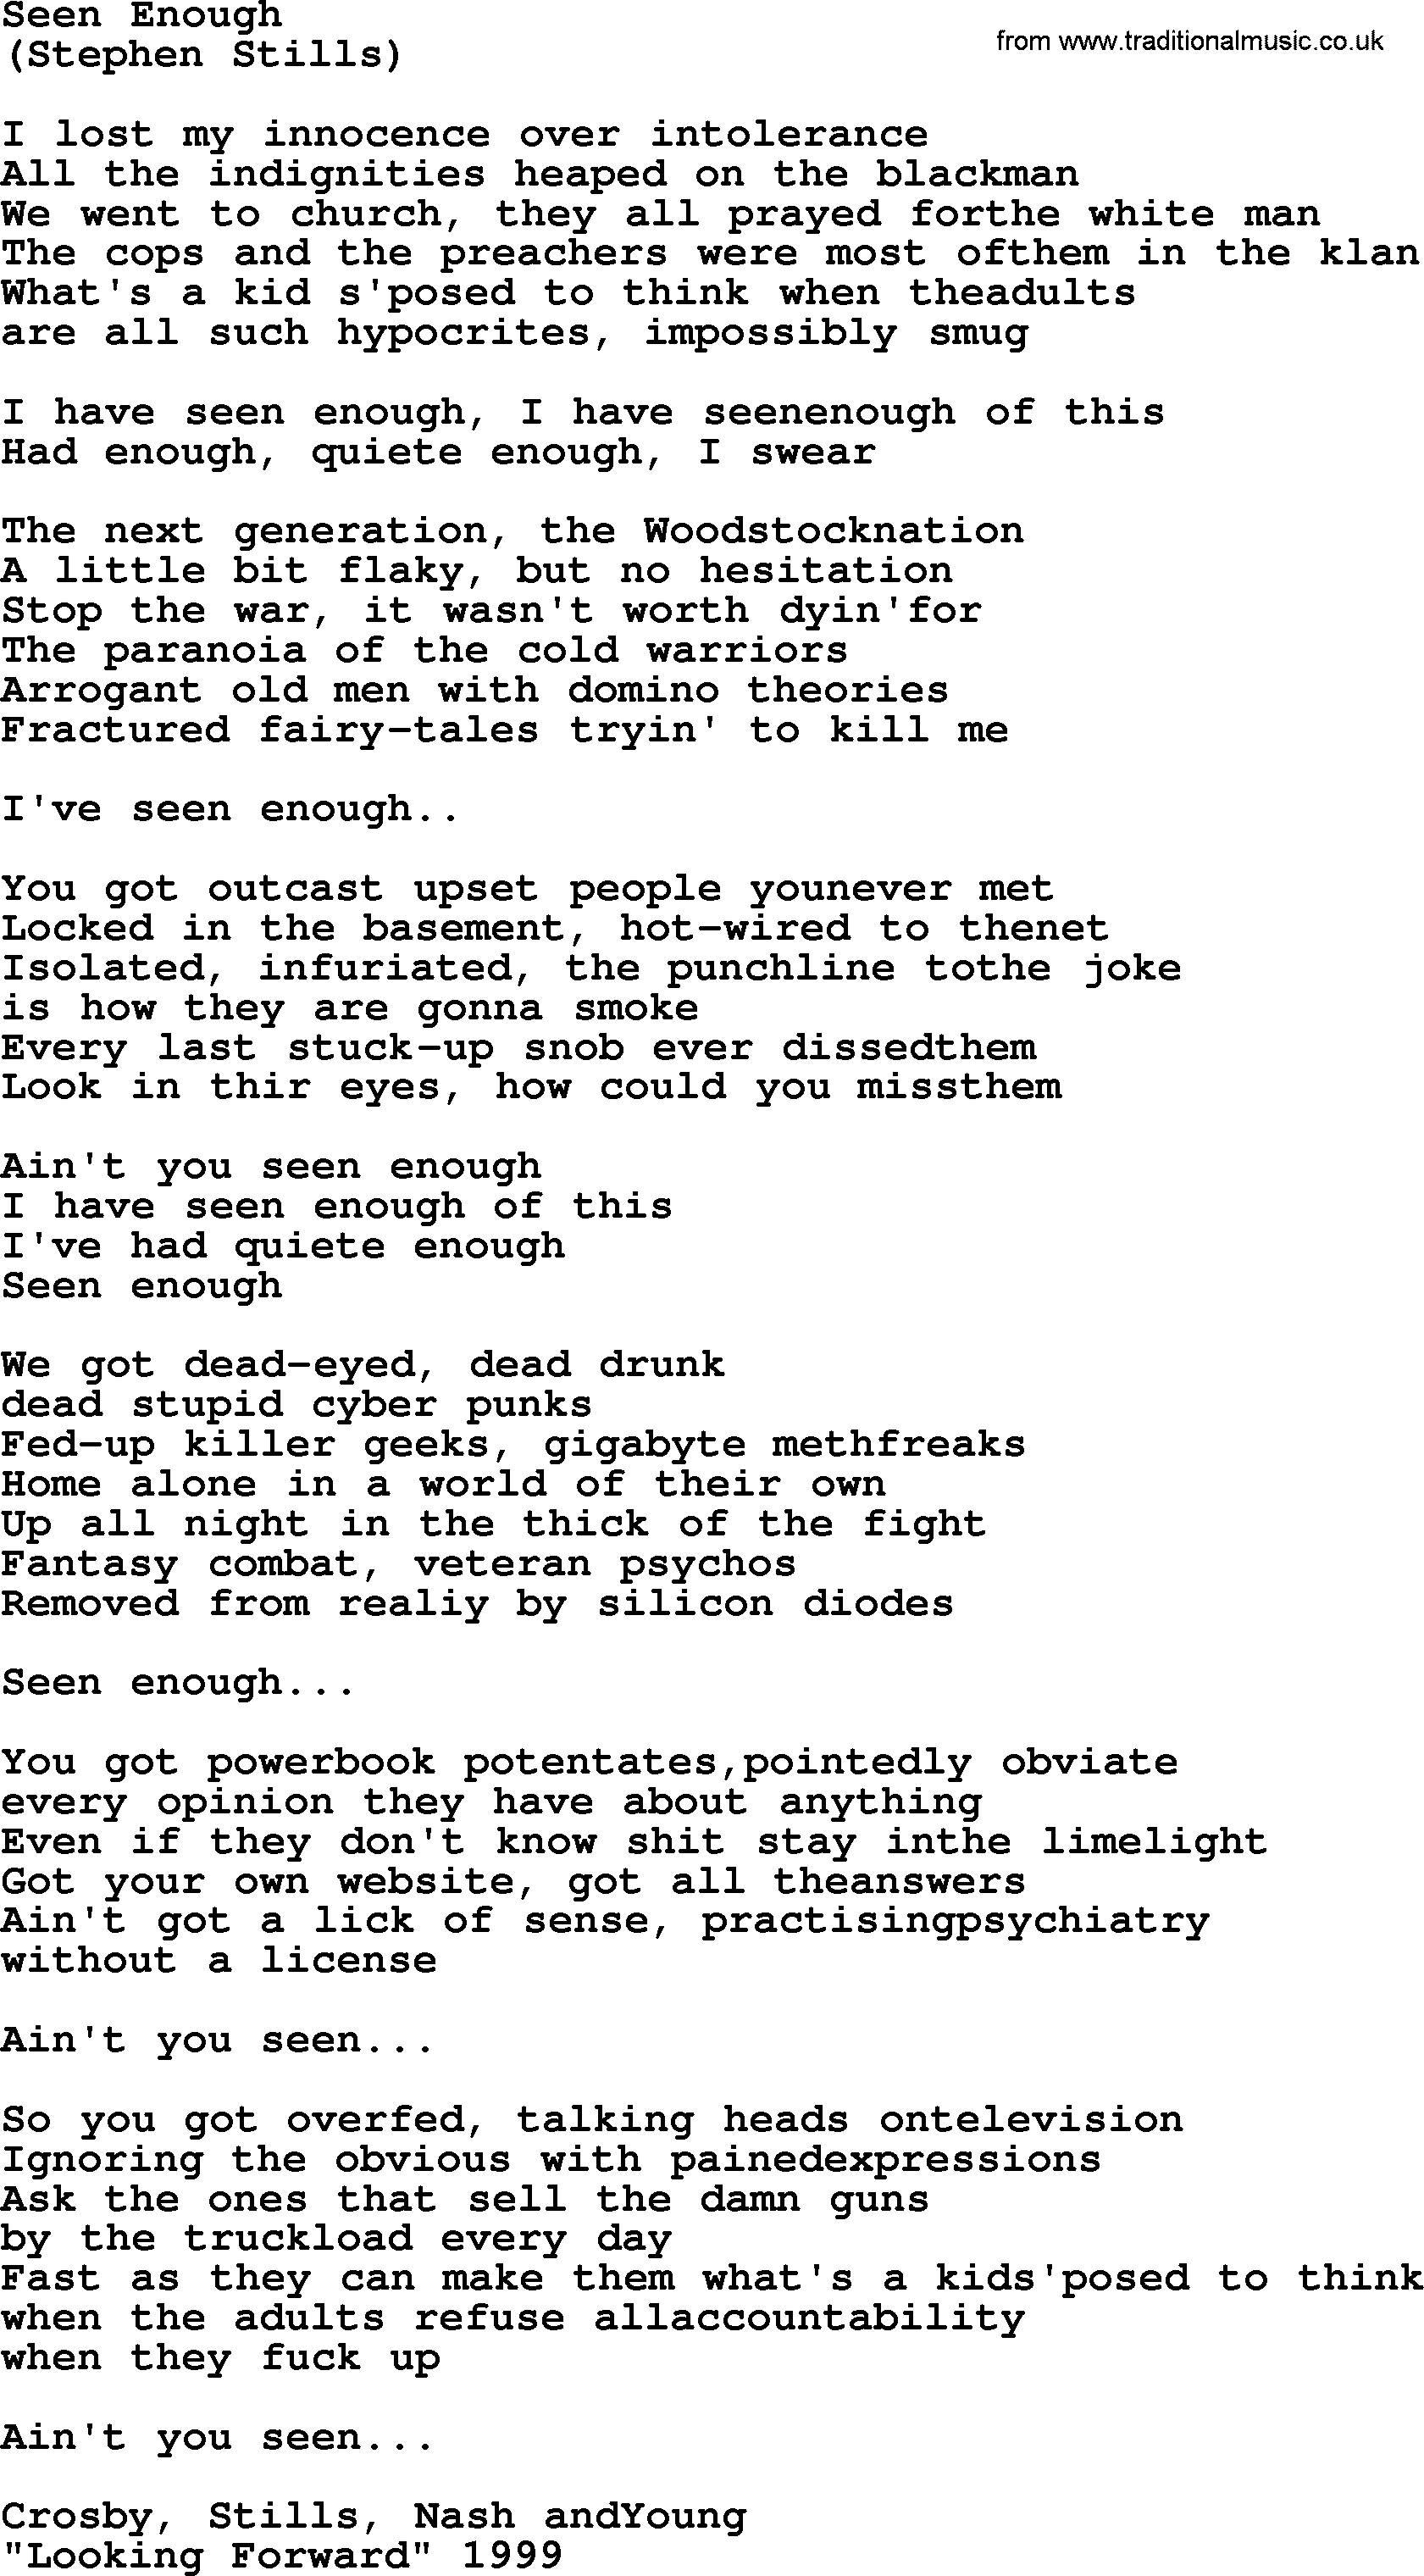 The Byrds song Seen Enough, lyrics